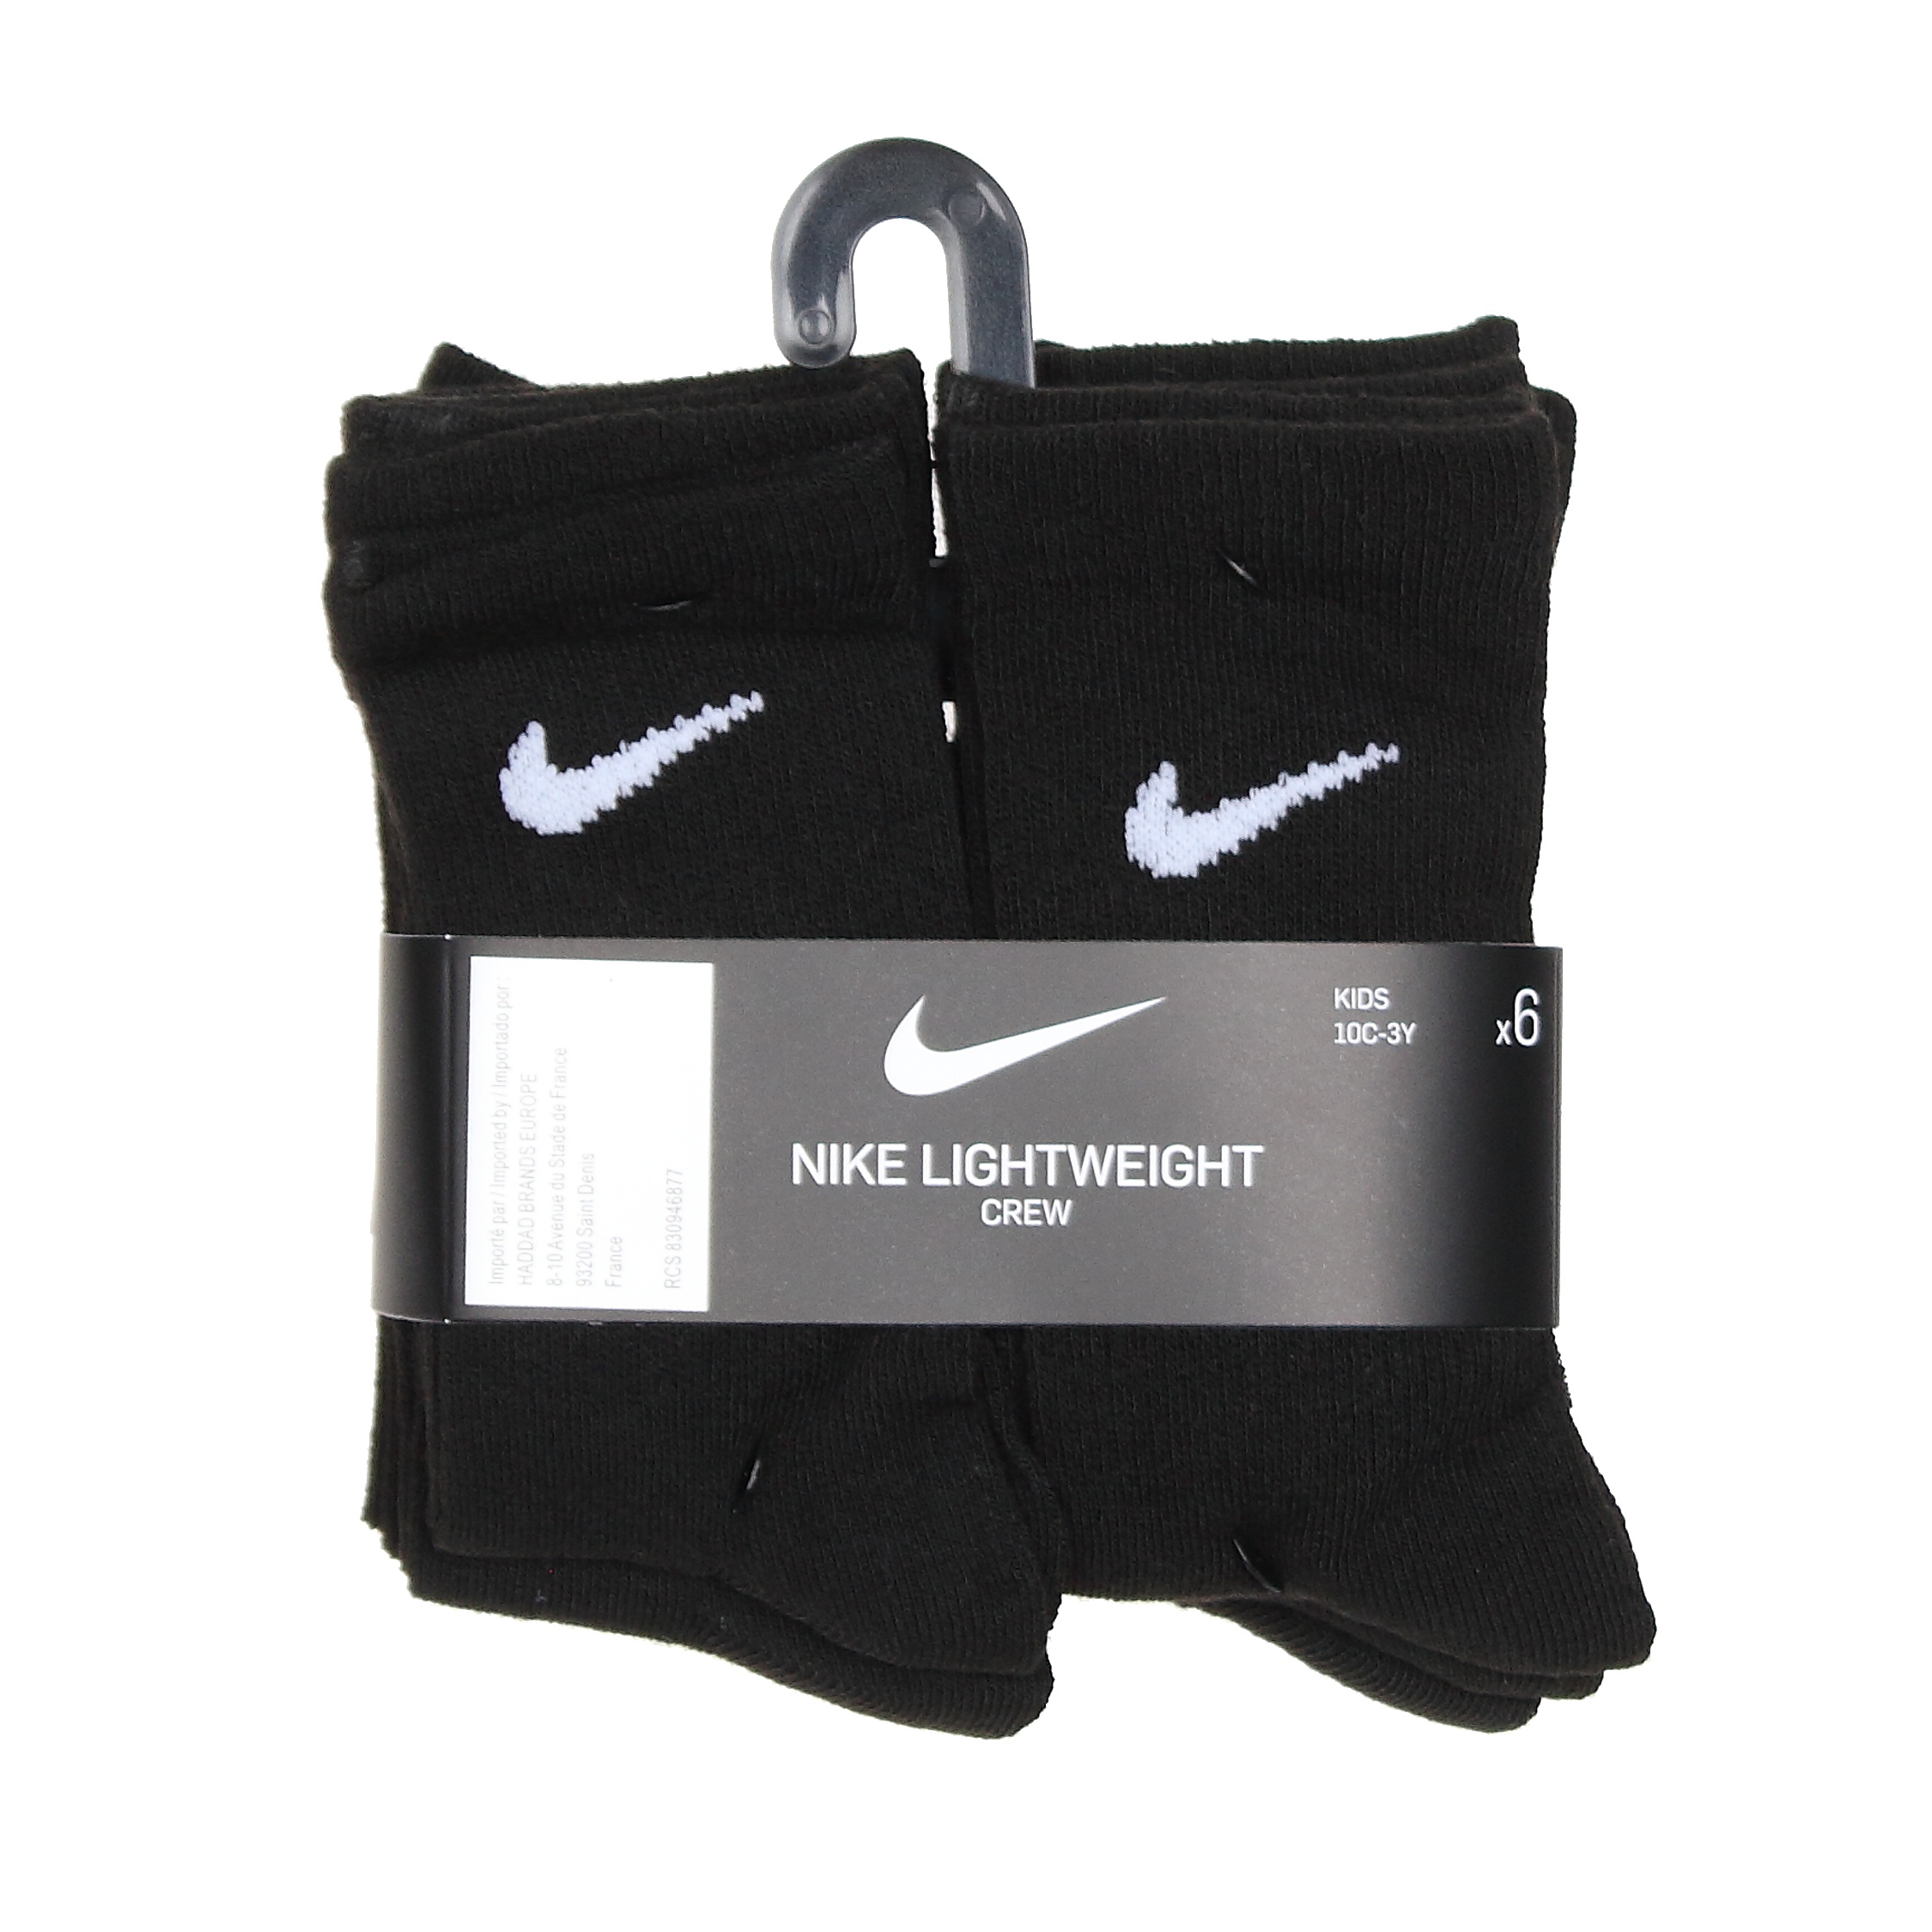 287.Chaussette Nike Un0030 023 Noir - Leader Mode 